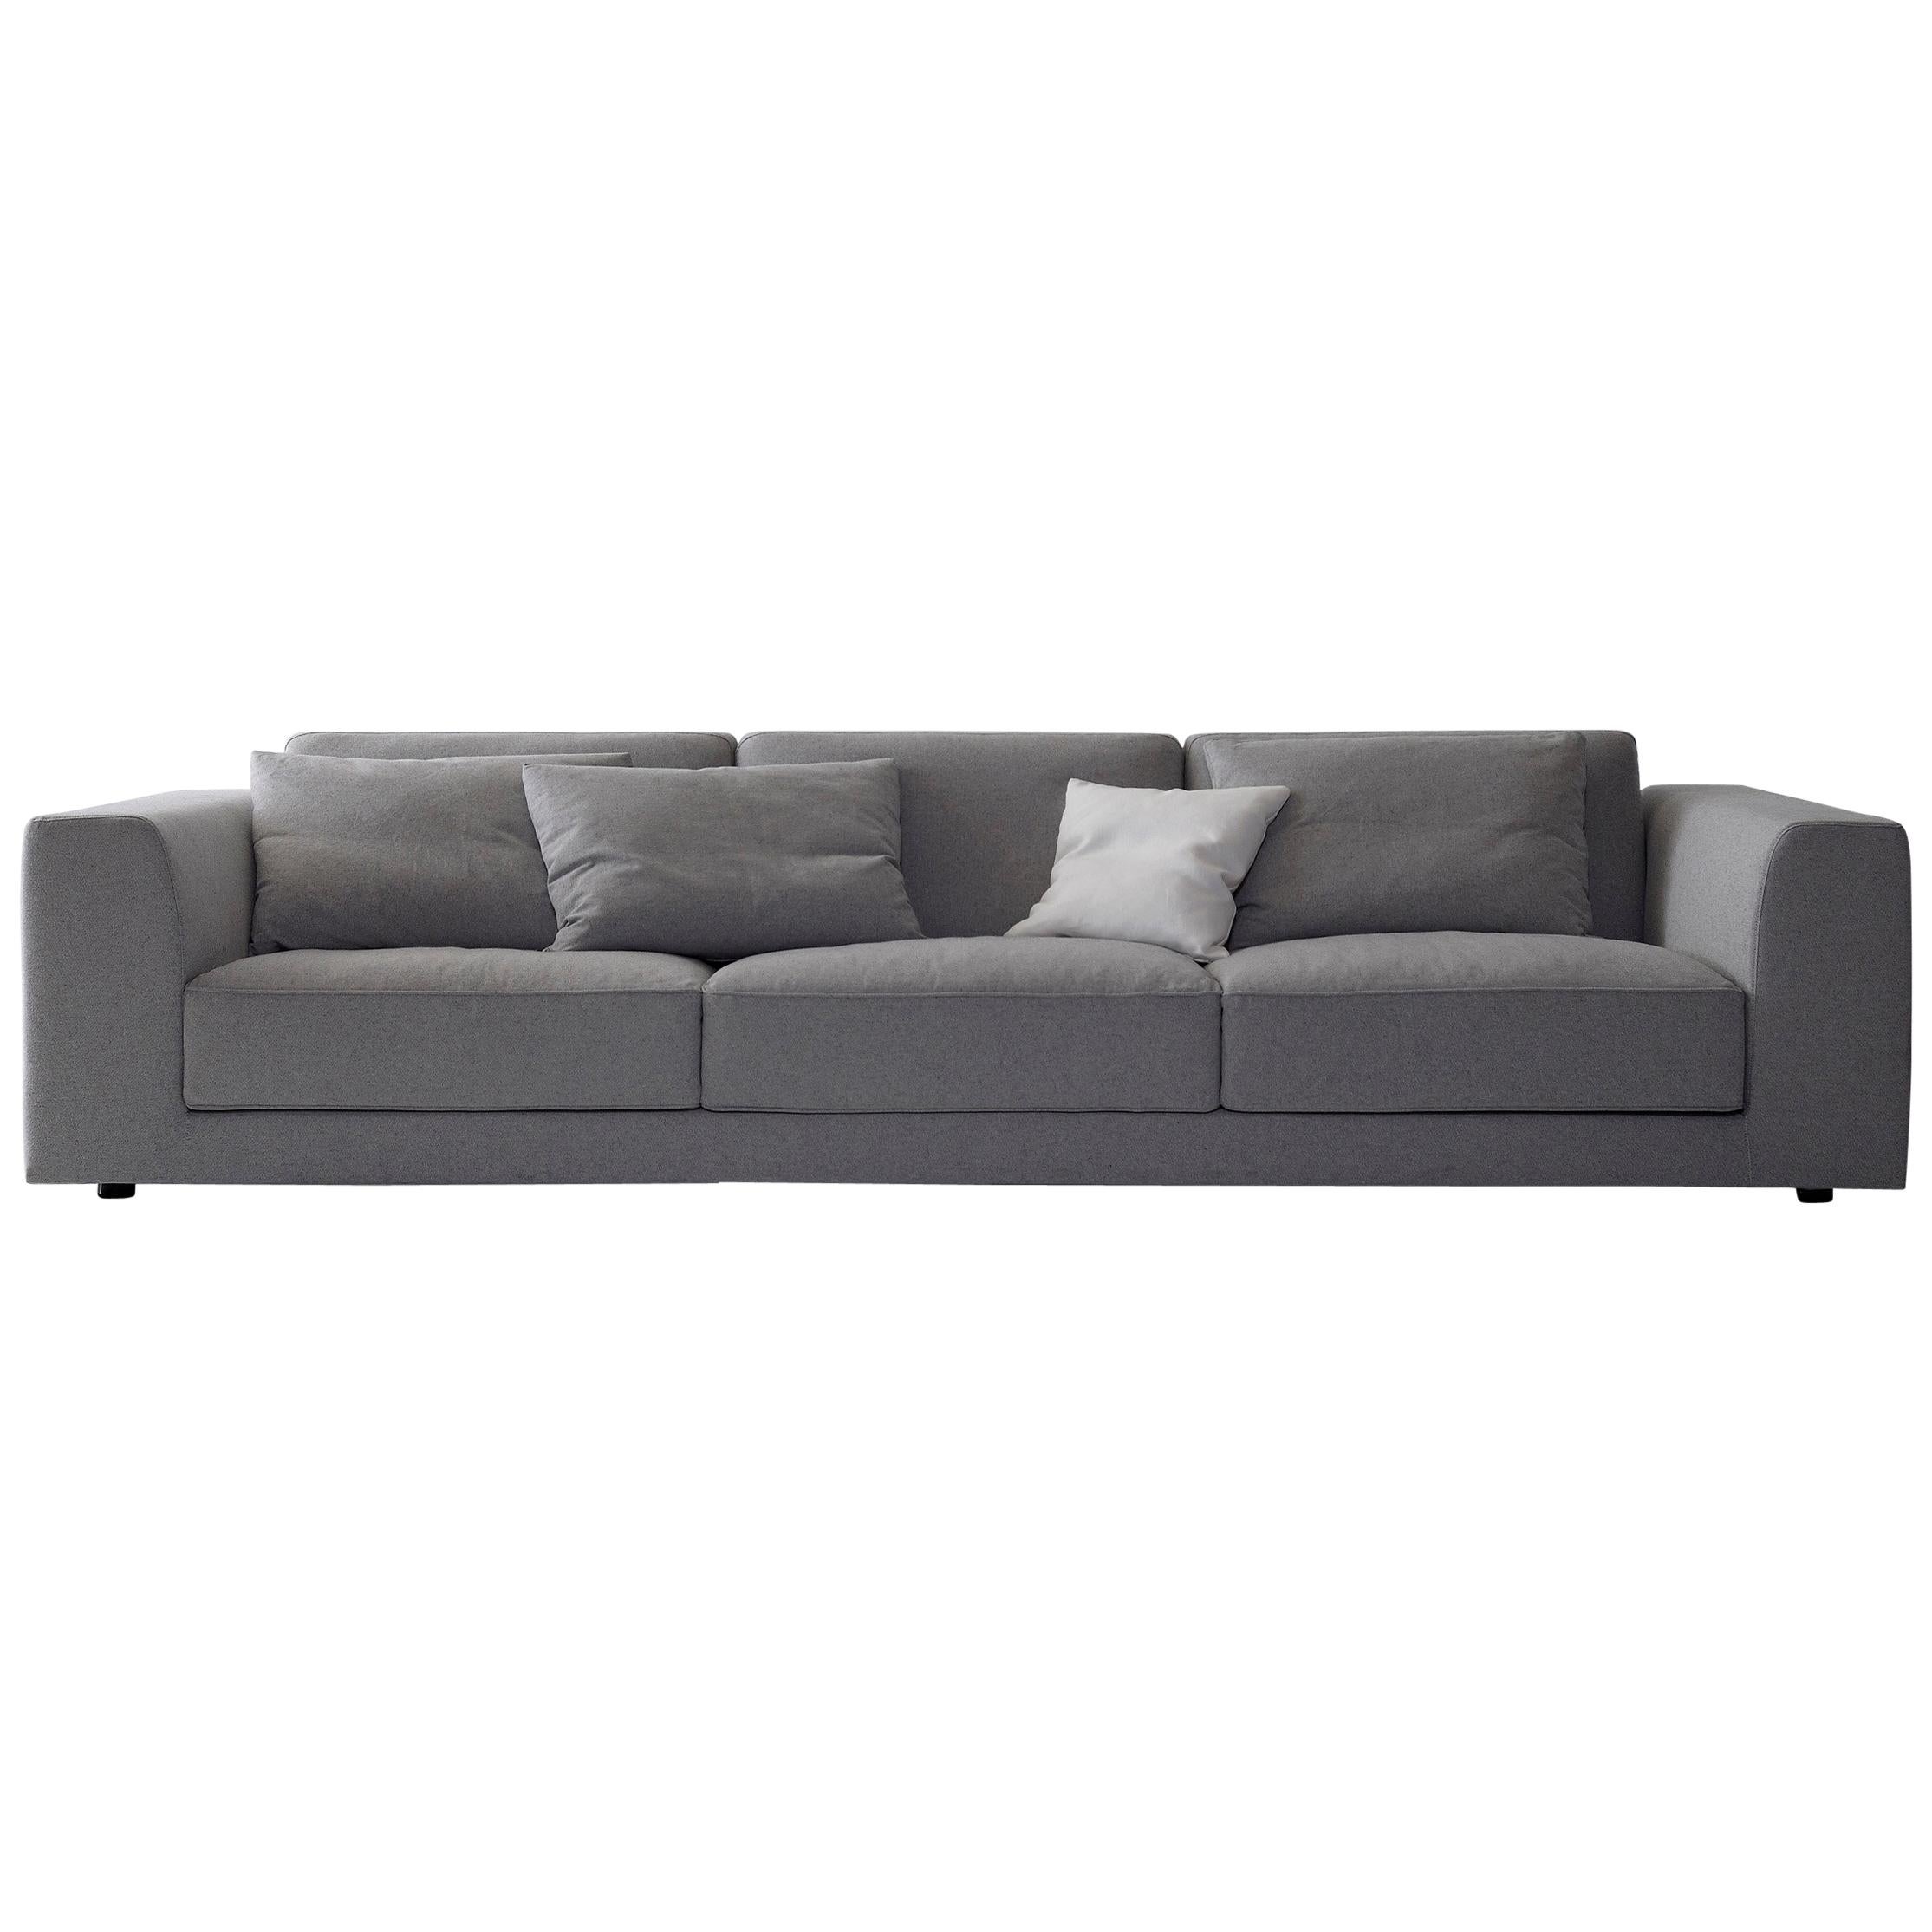 Nube Italia Bryant 012 Sofa in Dark Gray Fabric by Marco Corti For Sale